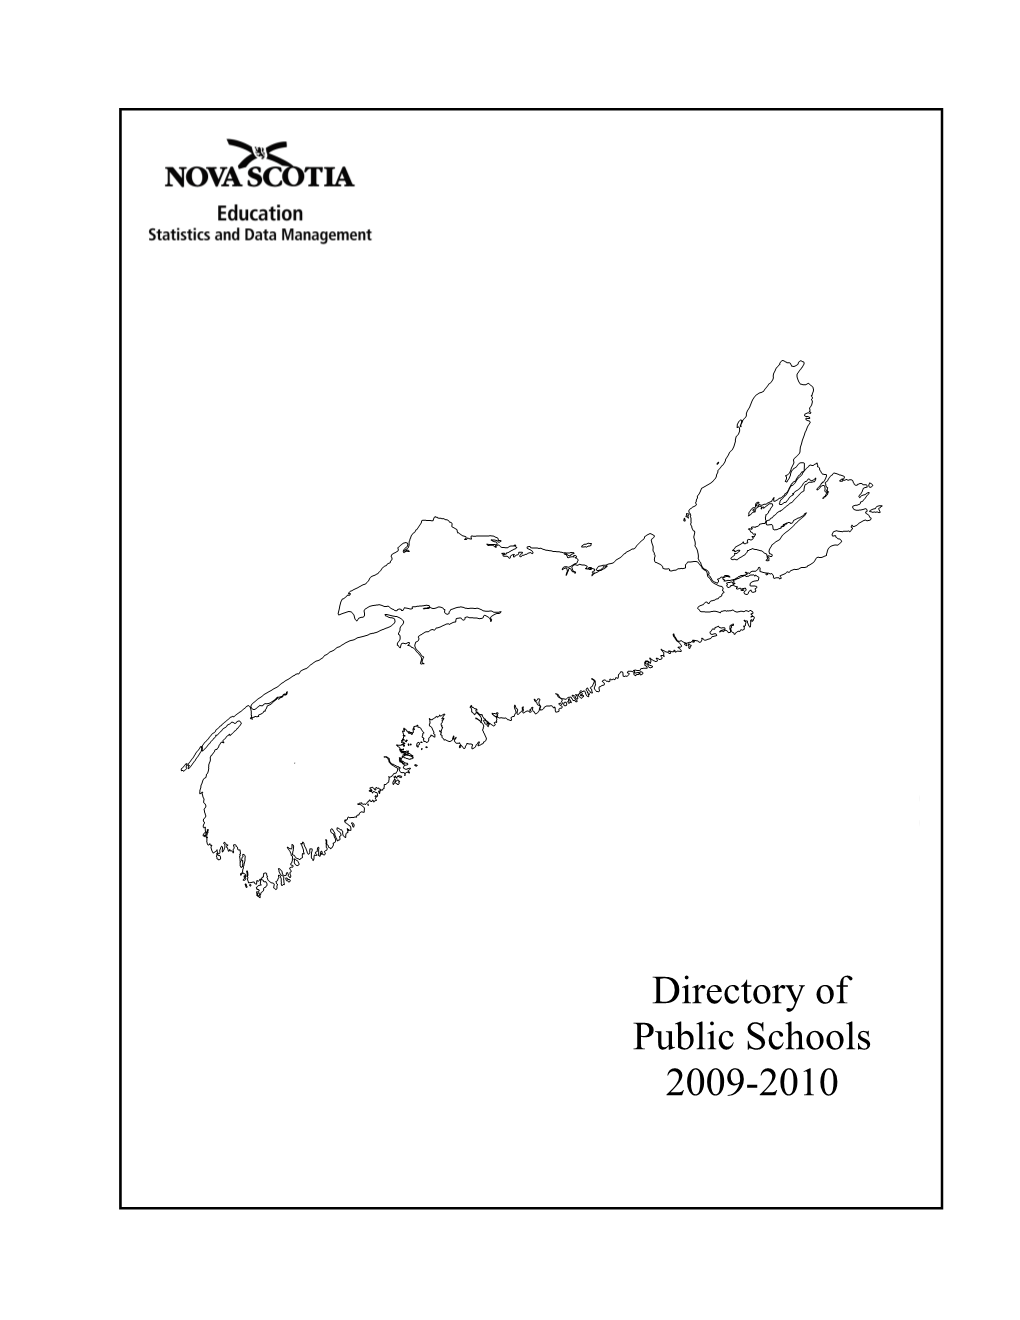 Directory of Schools 2009-2010